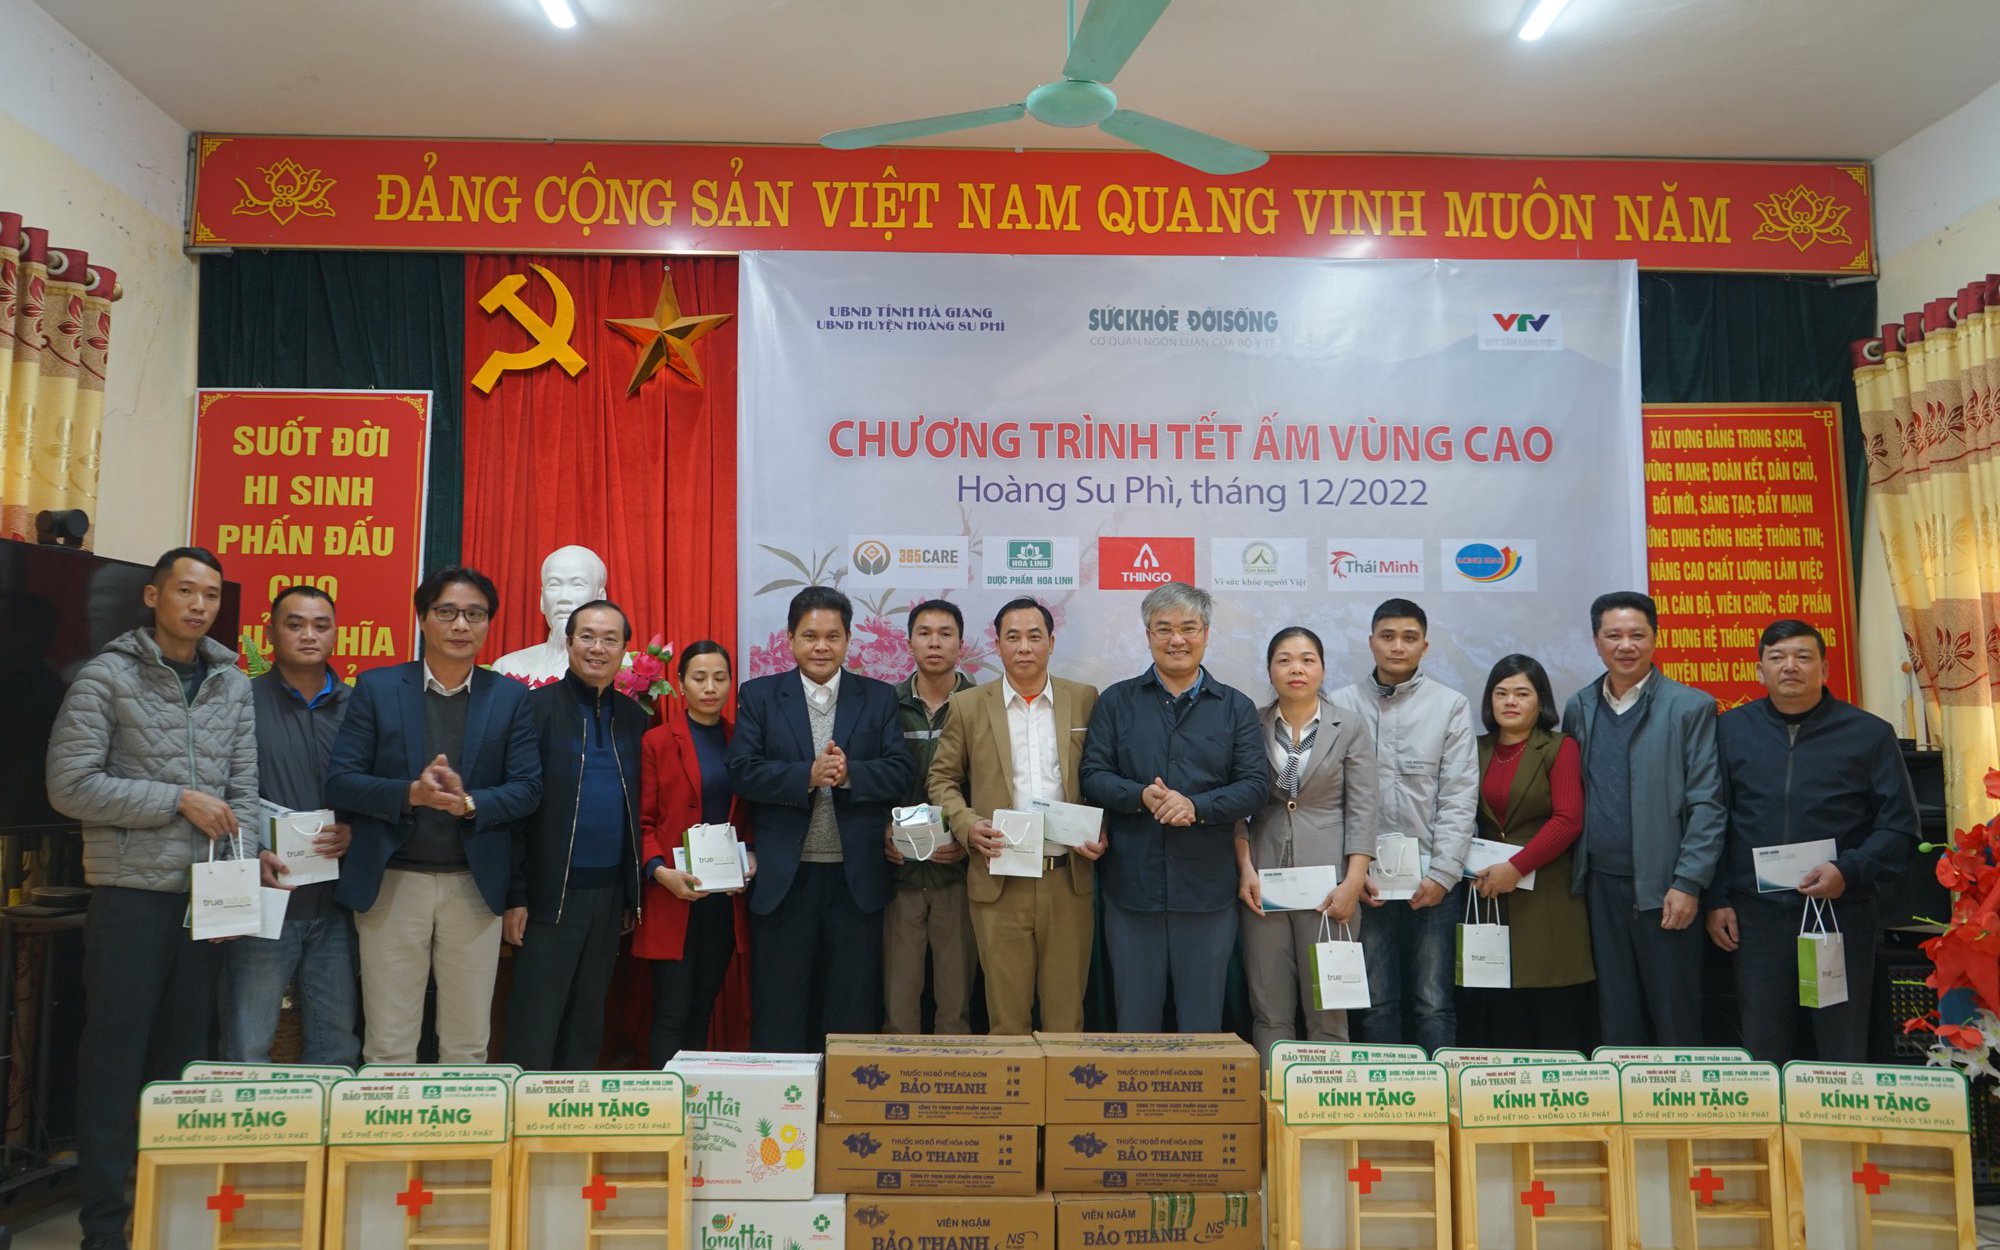 Chương trình thiện nguyện “Tết ấm vùng cao” tặng quà cho 10 trạm y tế của huyện Hoàng Su Phì